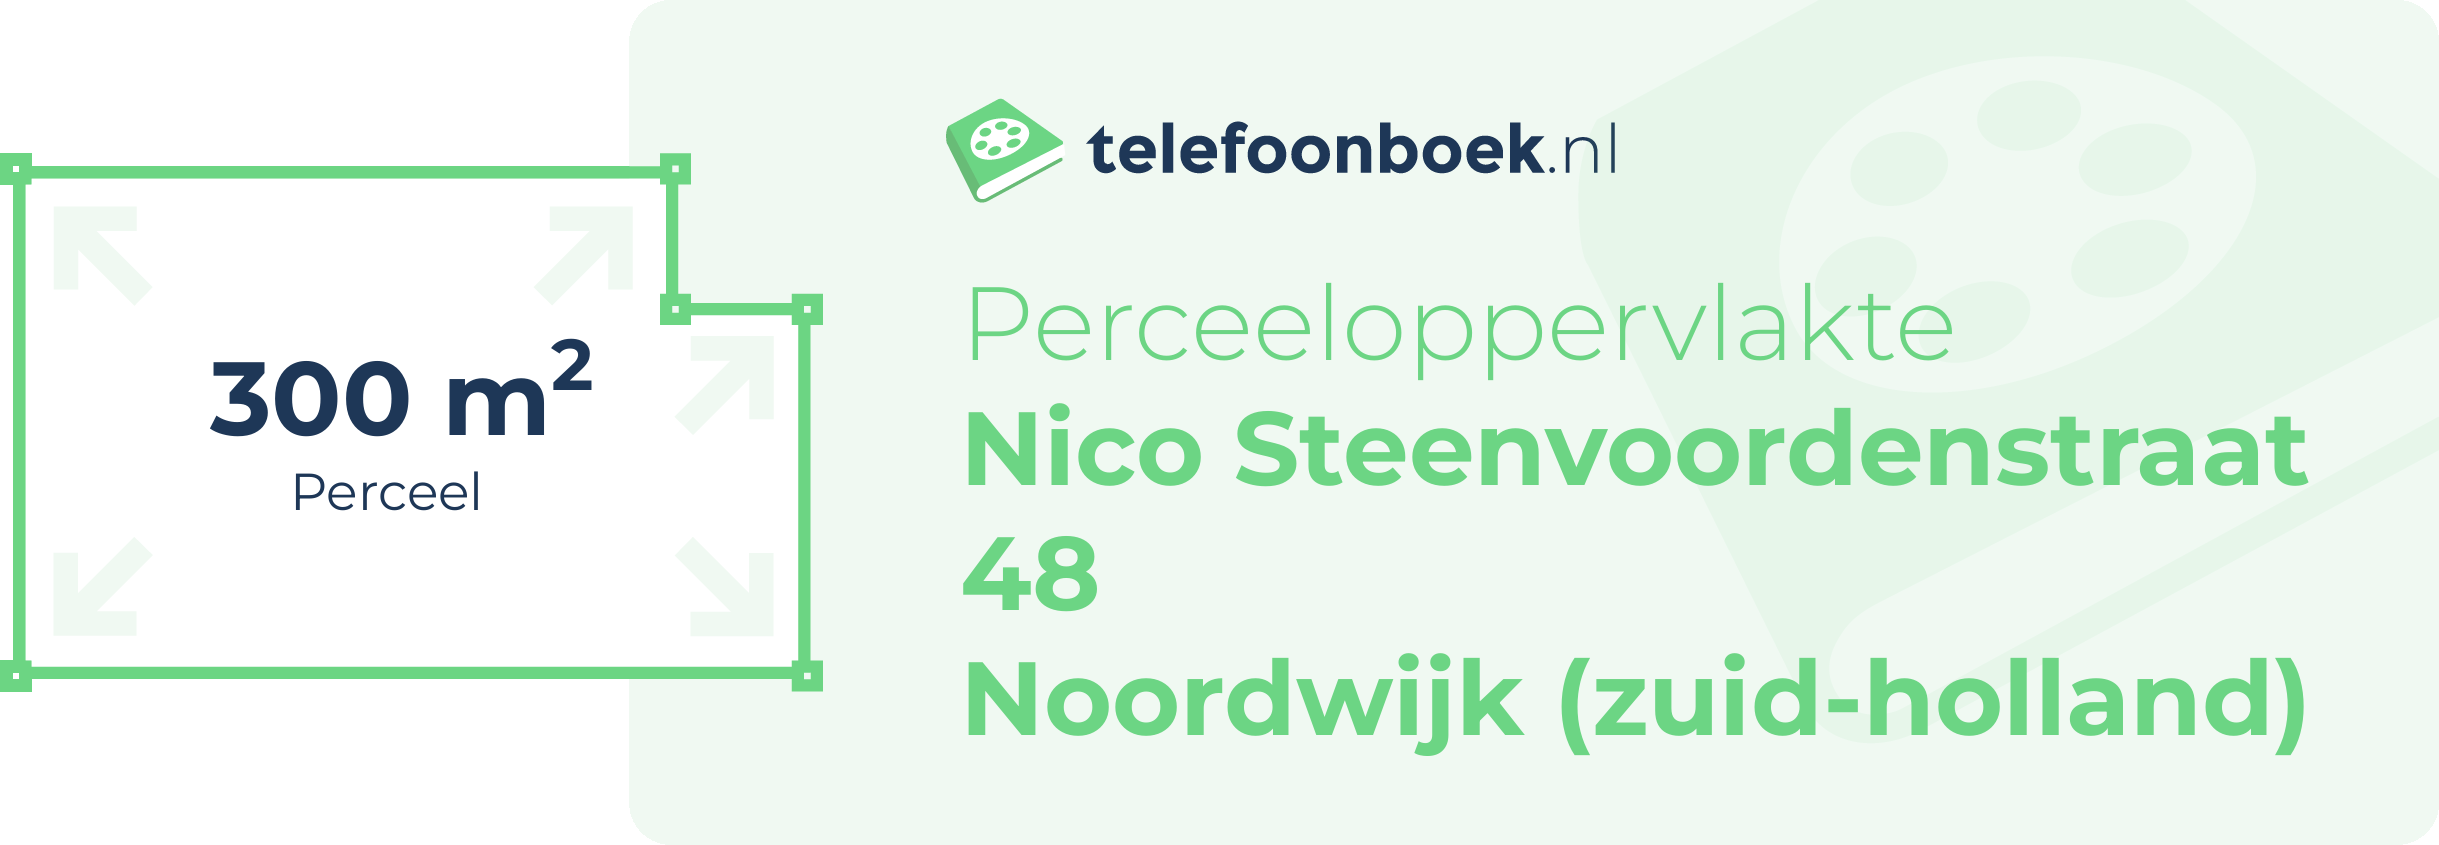 Perceeloppervlakte Nico Steenvoordenstraat 48 Noordwijk (Zuid-Holland)